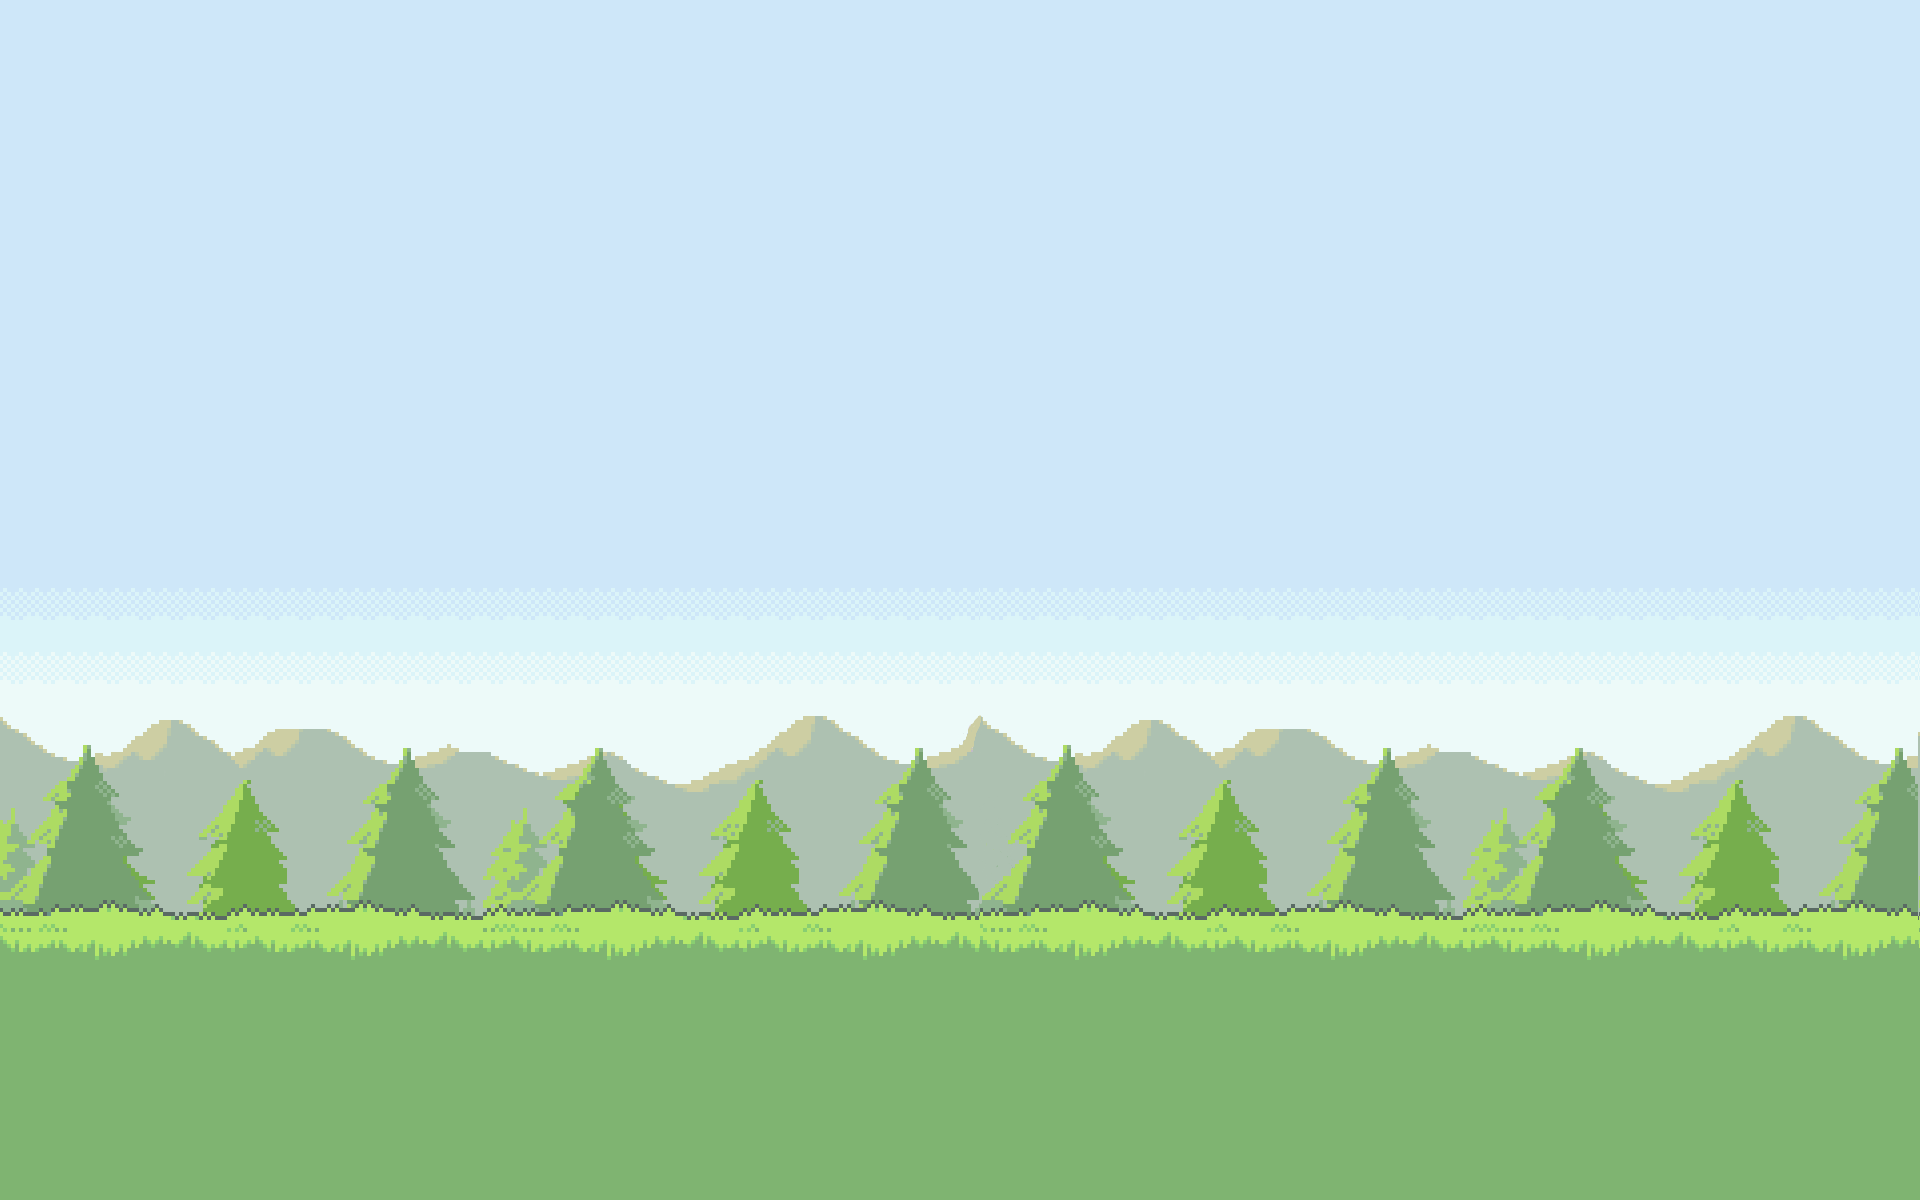 Pokemon Grass Background